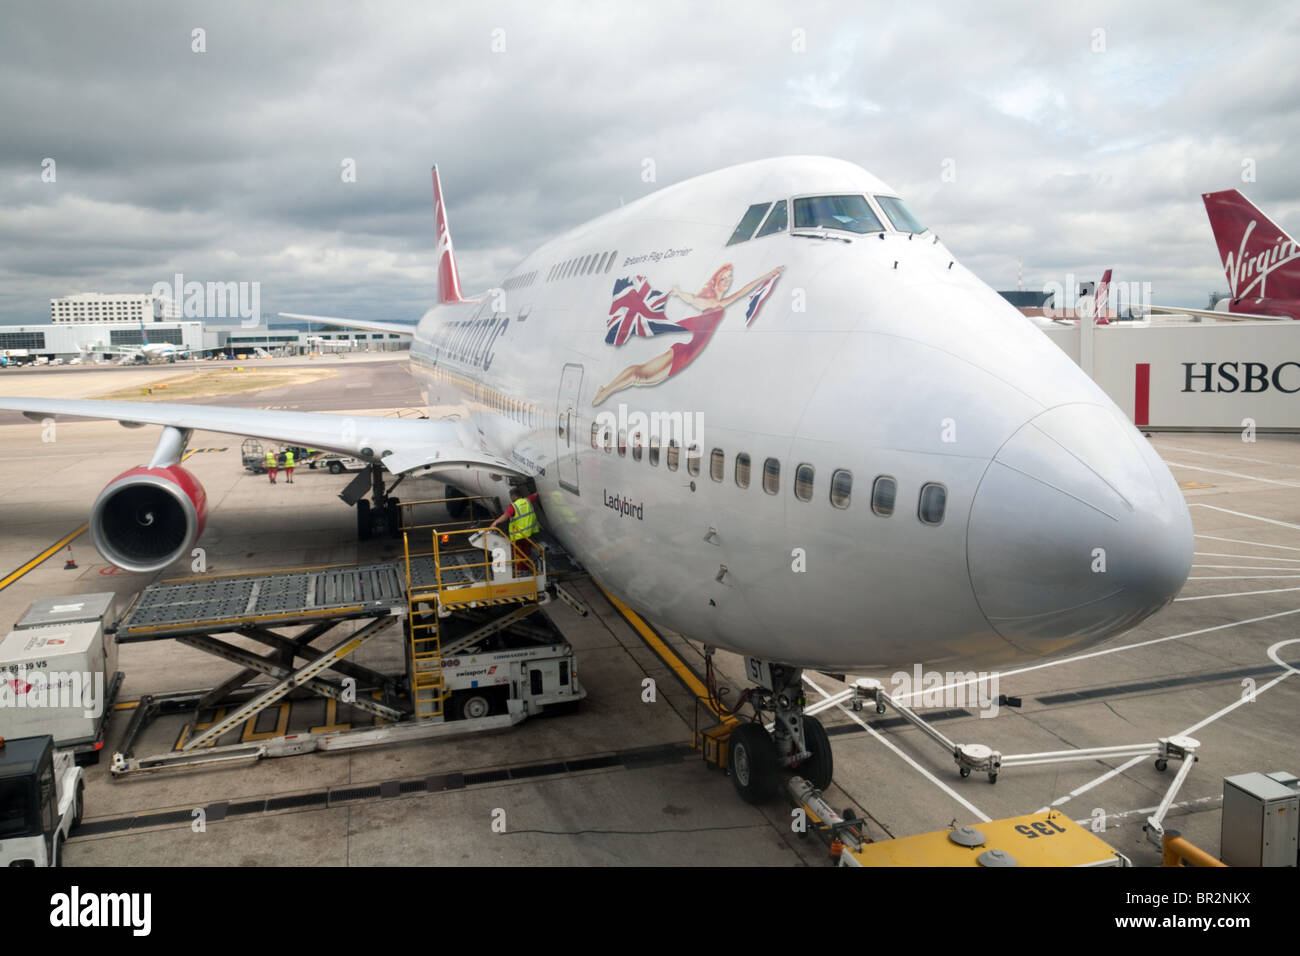 Virgin Atlantic Boeing 747 sur le tarmac de l'aéroport de Gatwick, terminal sud, UK Banque D'Images